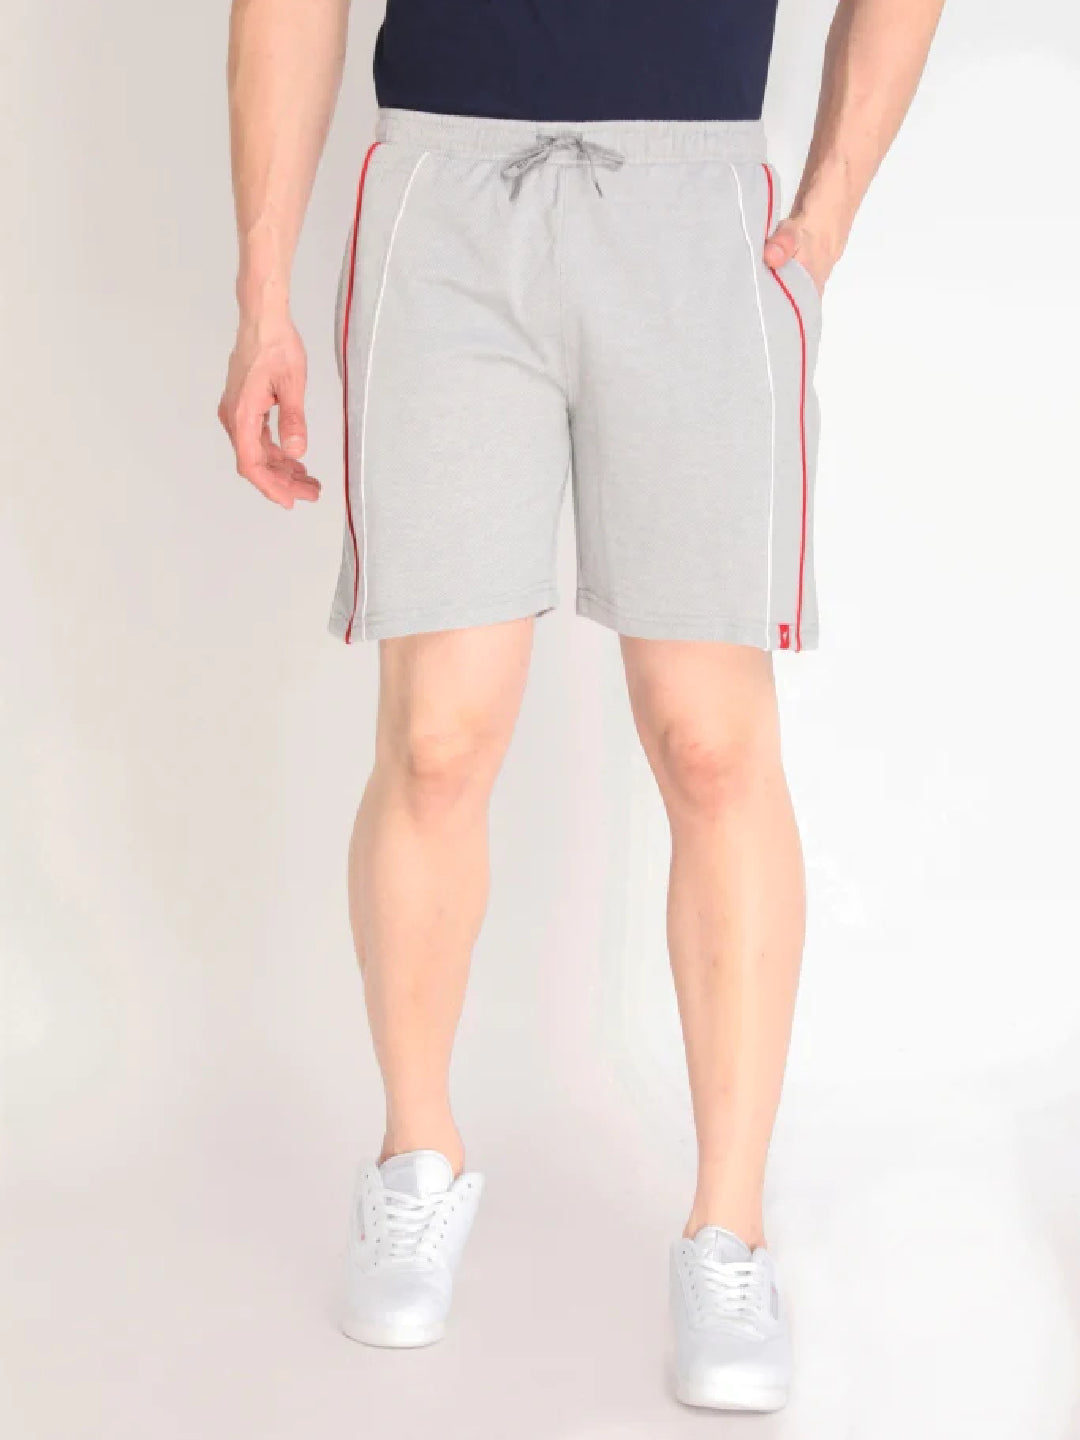 Neva Men's Contrast Front Piping Smart Look Bermuda- Milange Grey